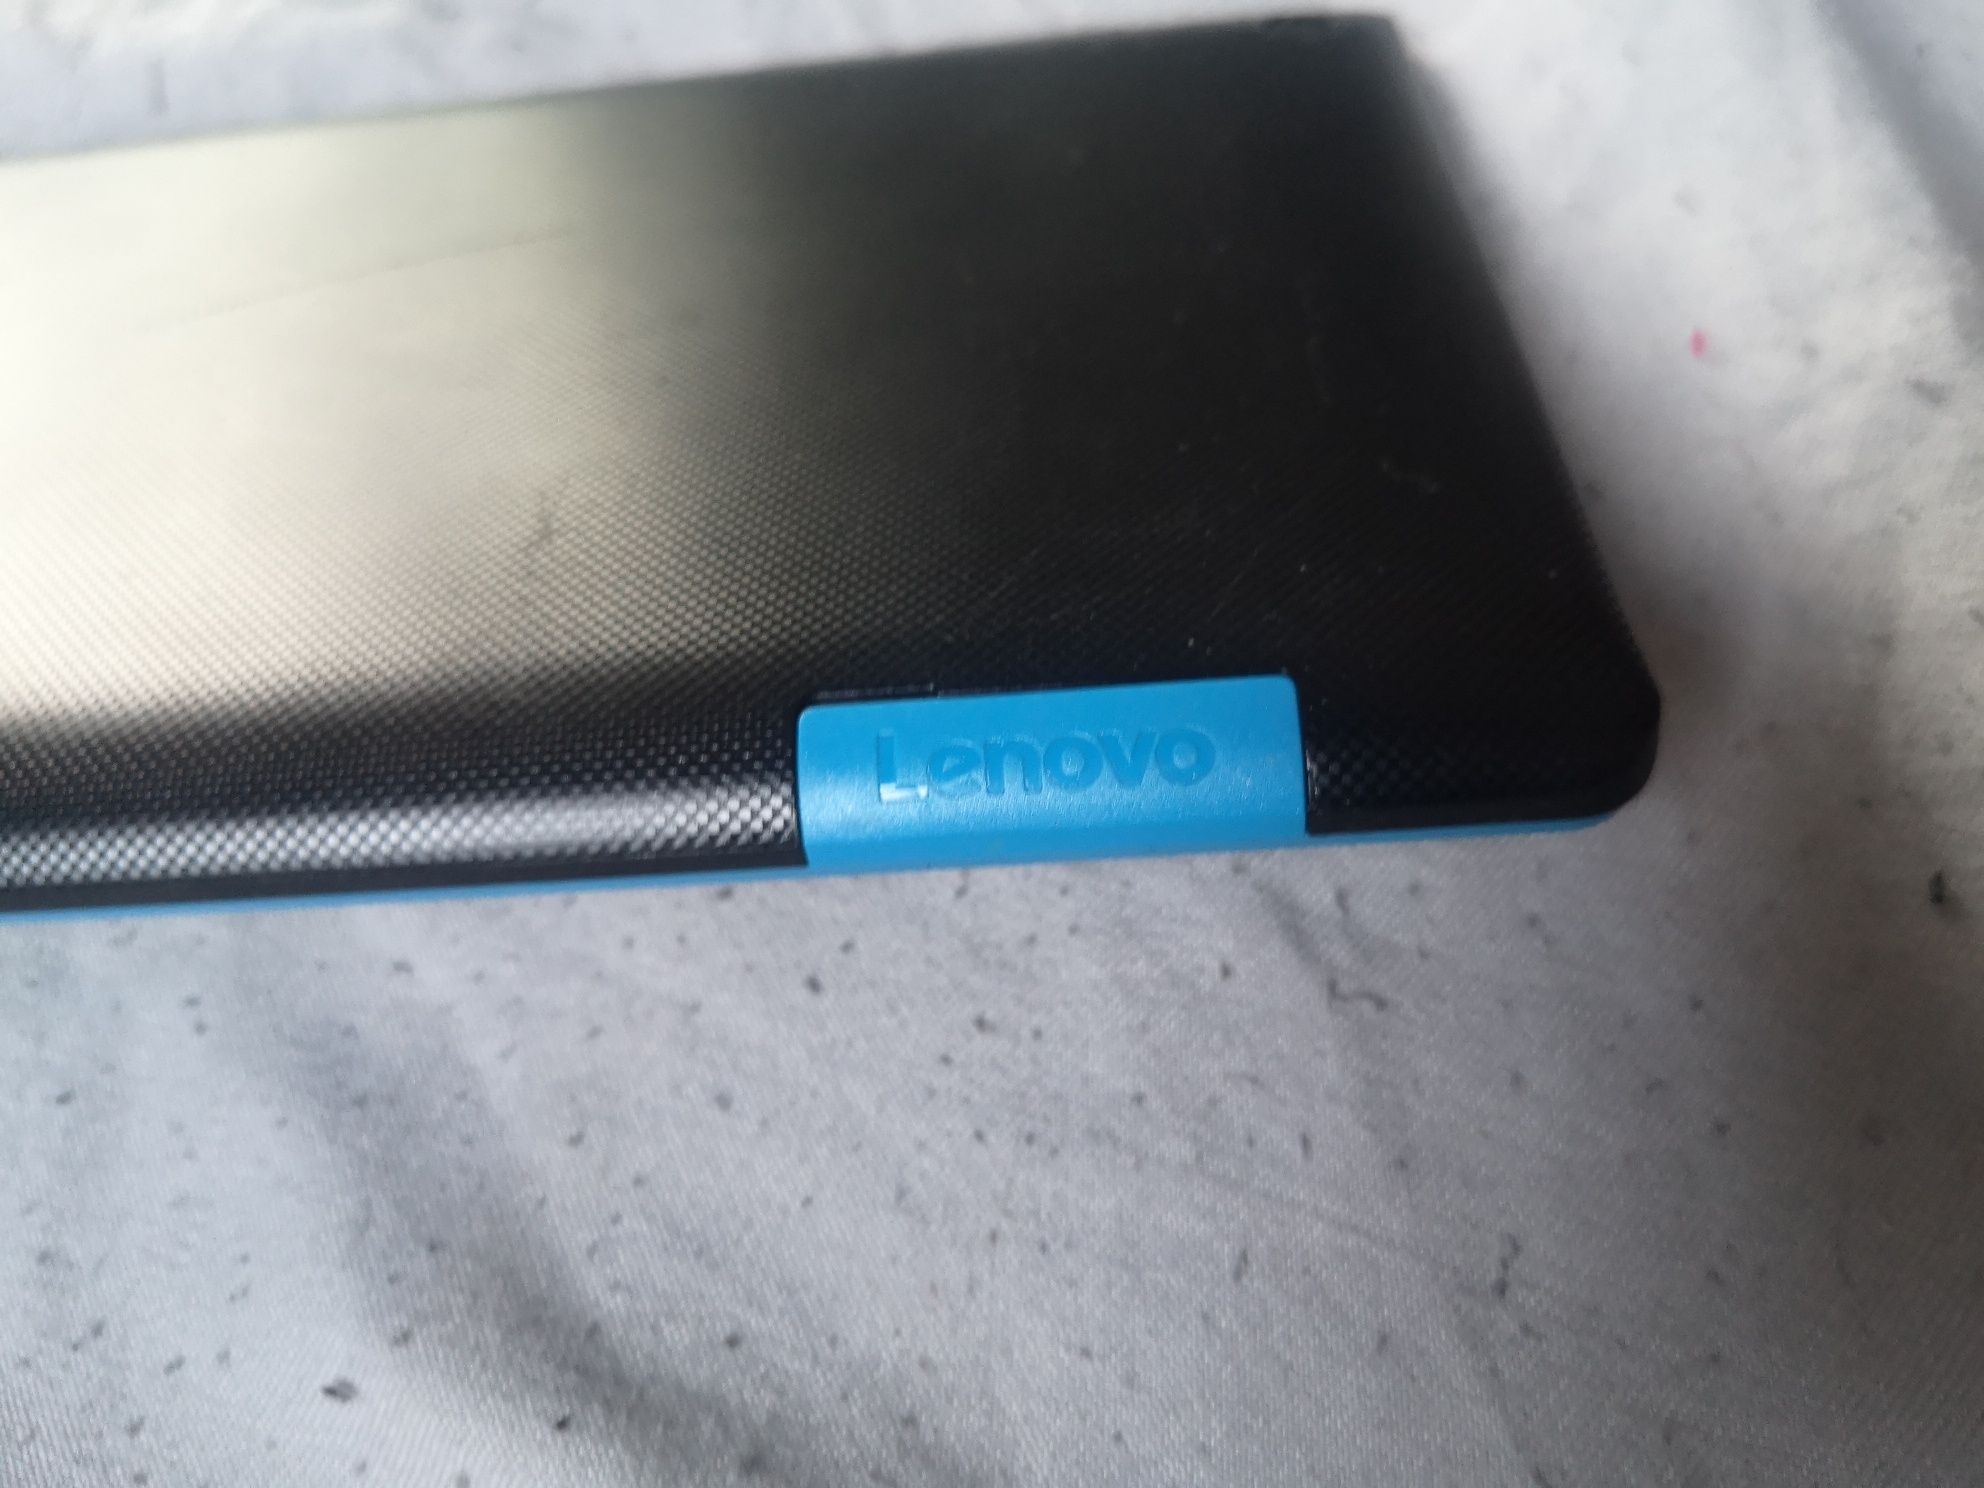 Tablet Lenovo 7 cali używany kilka miesięcy